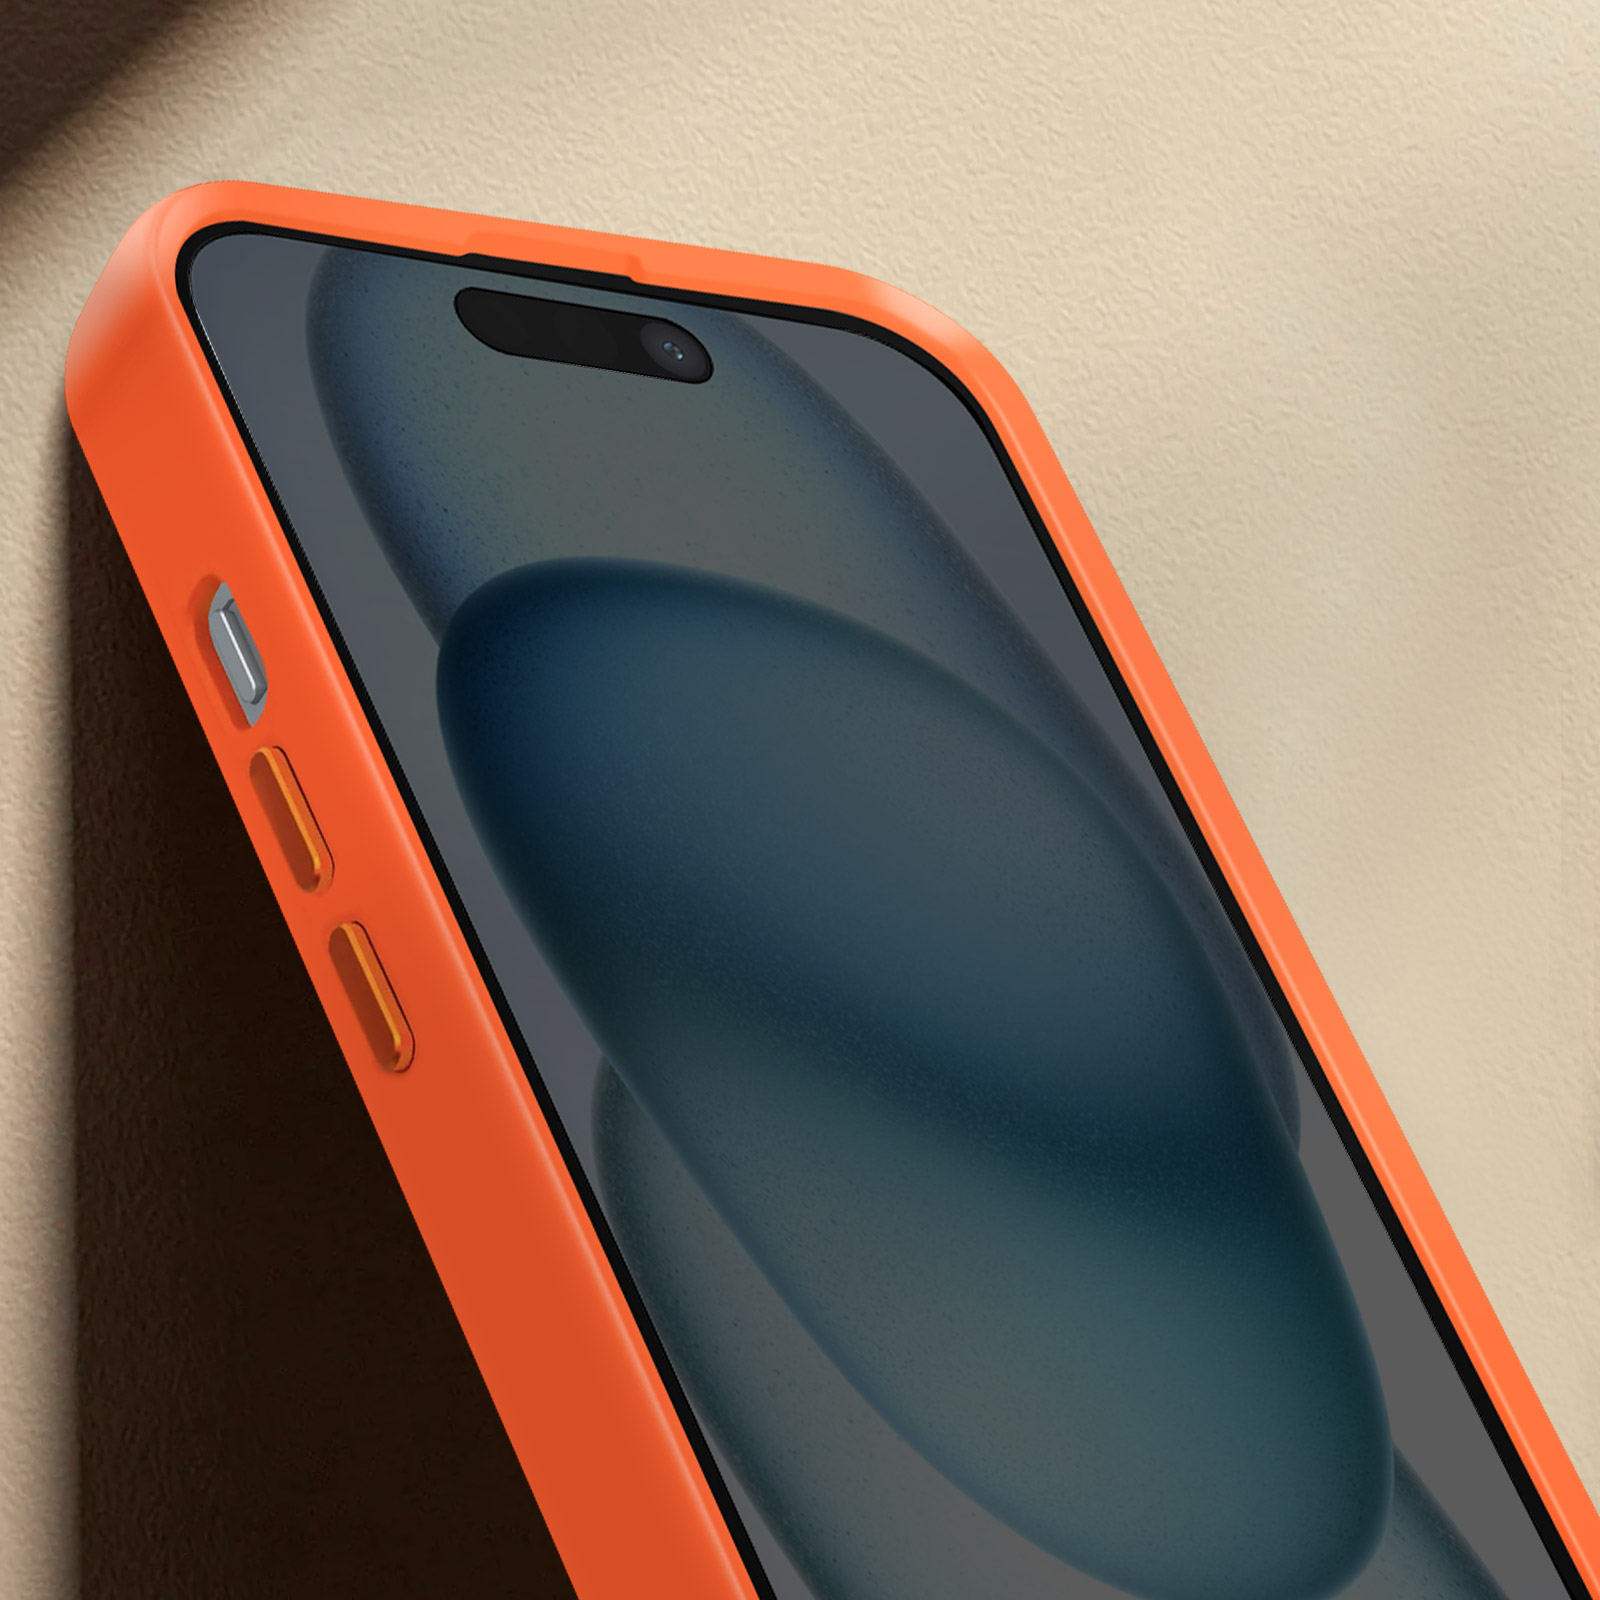 Carcasa Silicona iPhone 12/12 Pro Apple MagSafe Naranja Kumquat